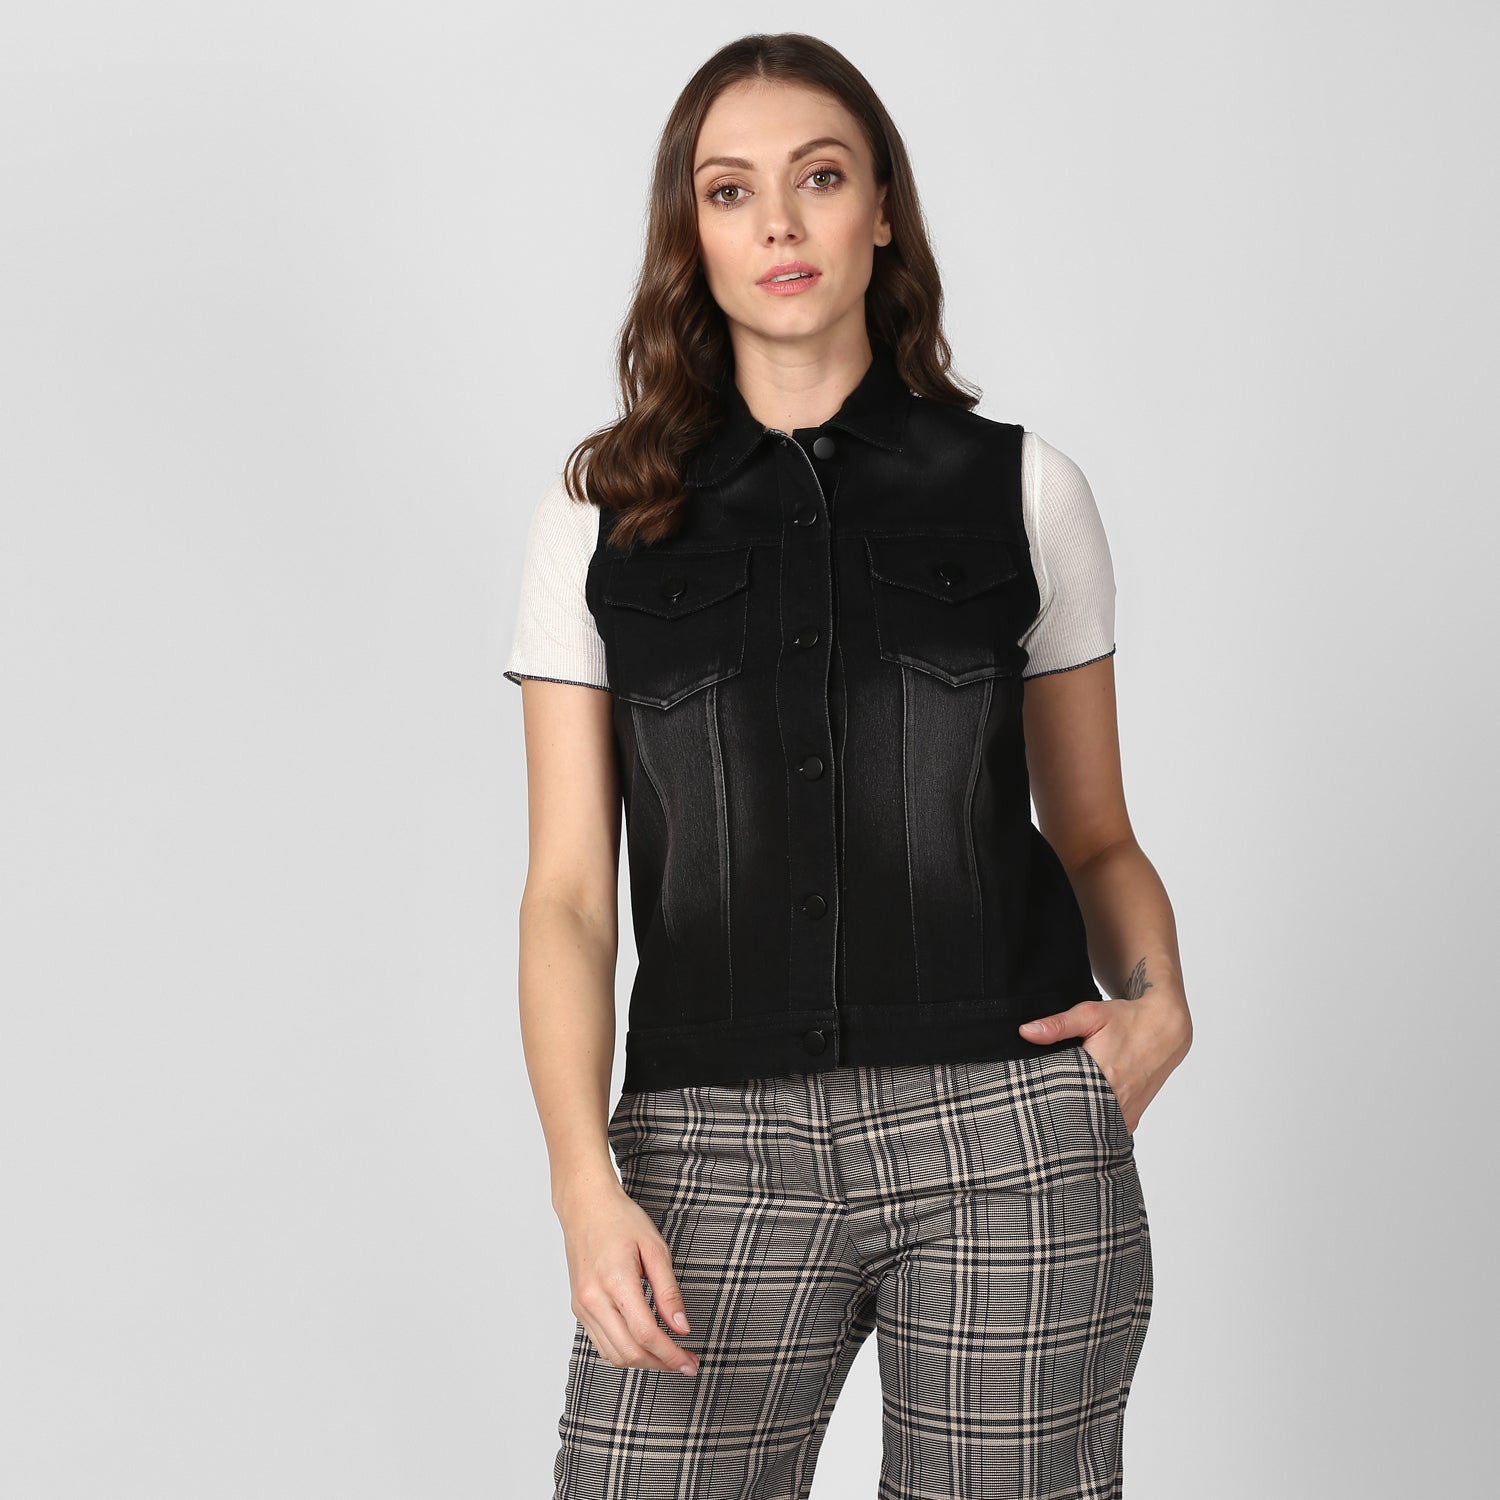 Women's Black Denim Sleeveless Jacket with Washed effect - StyleStone